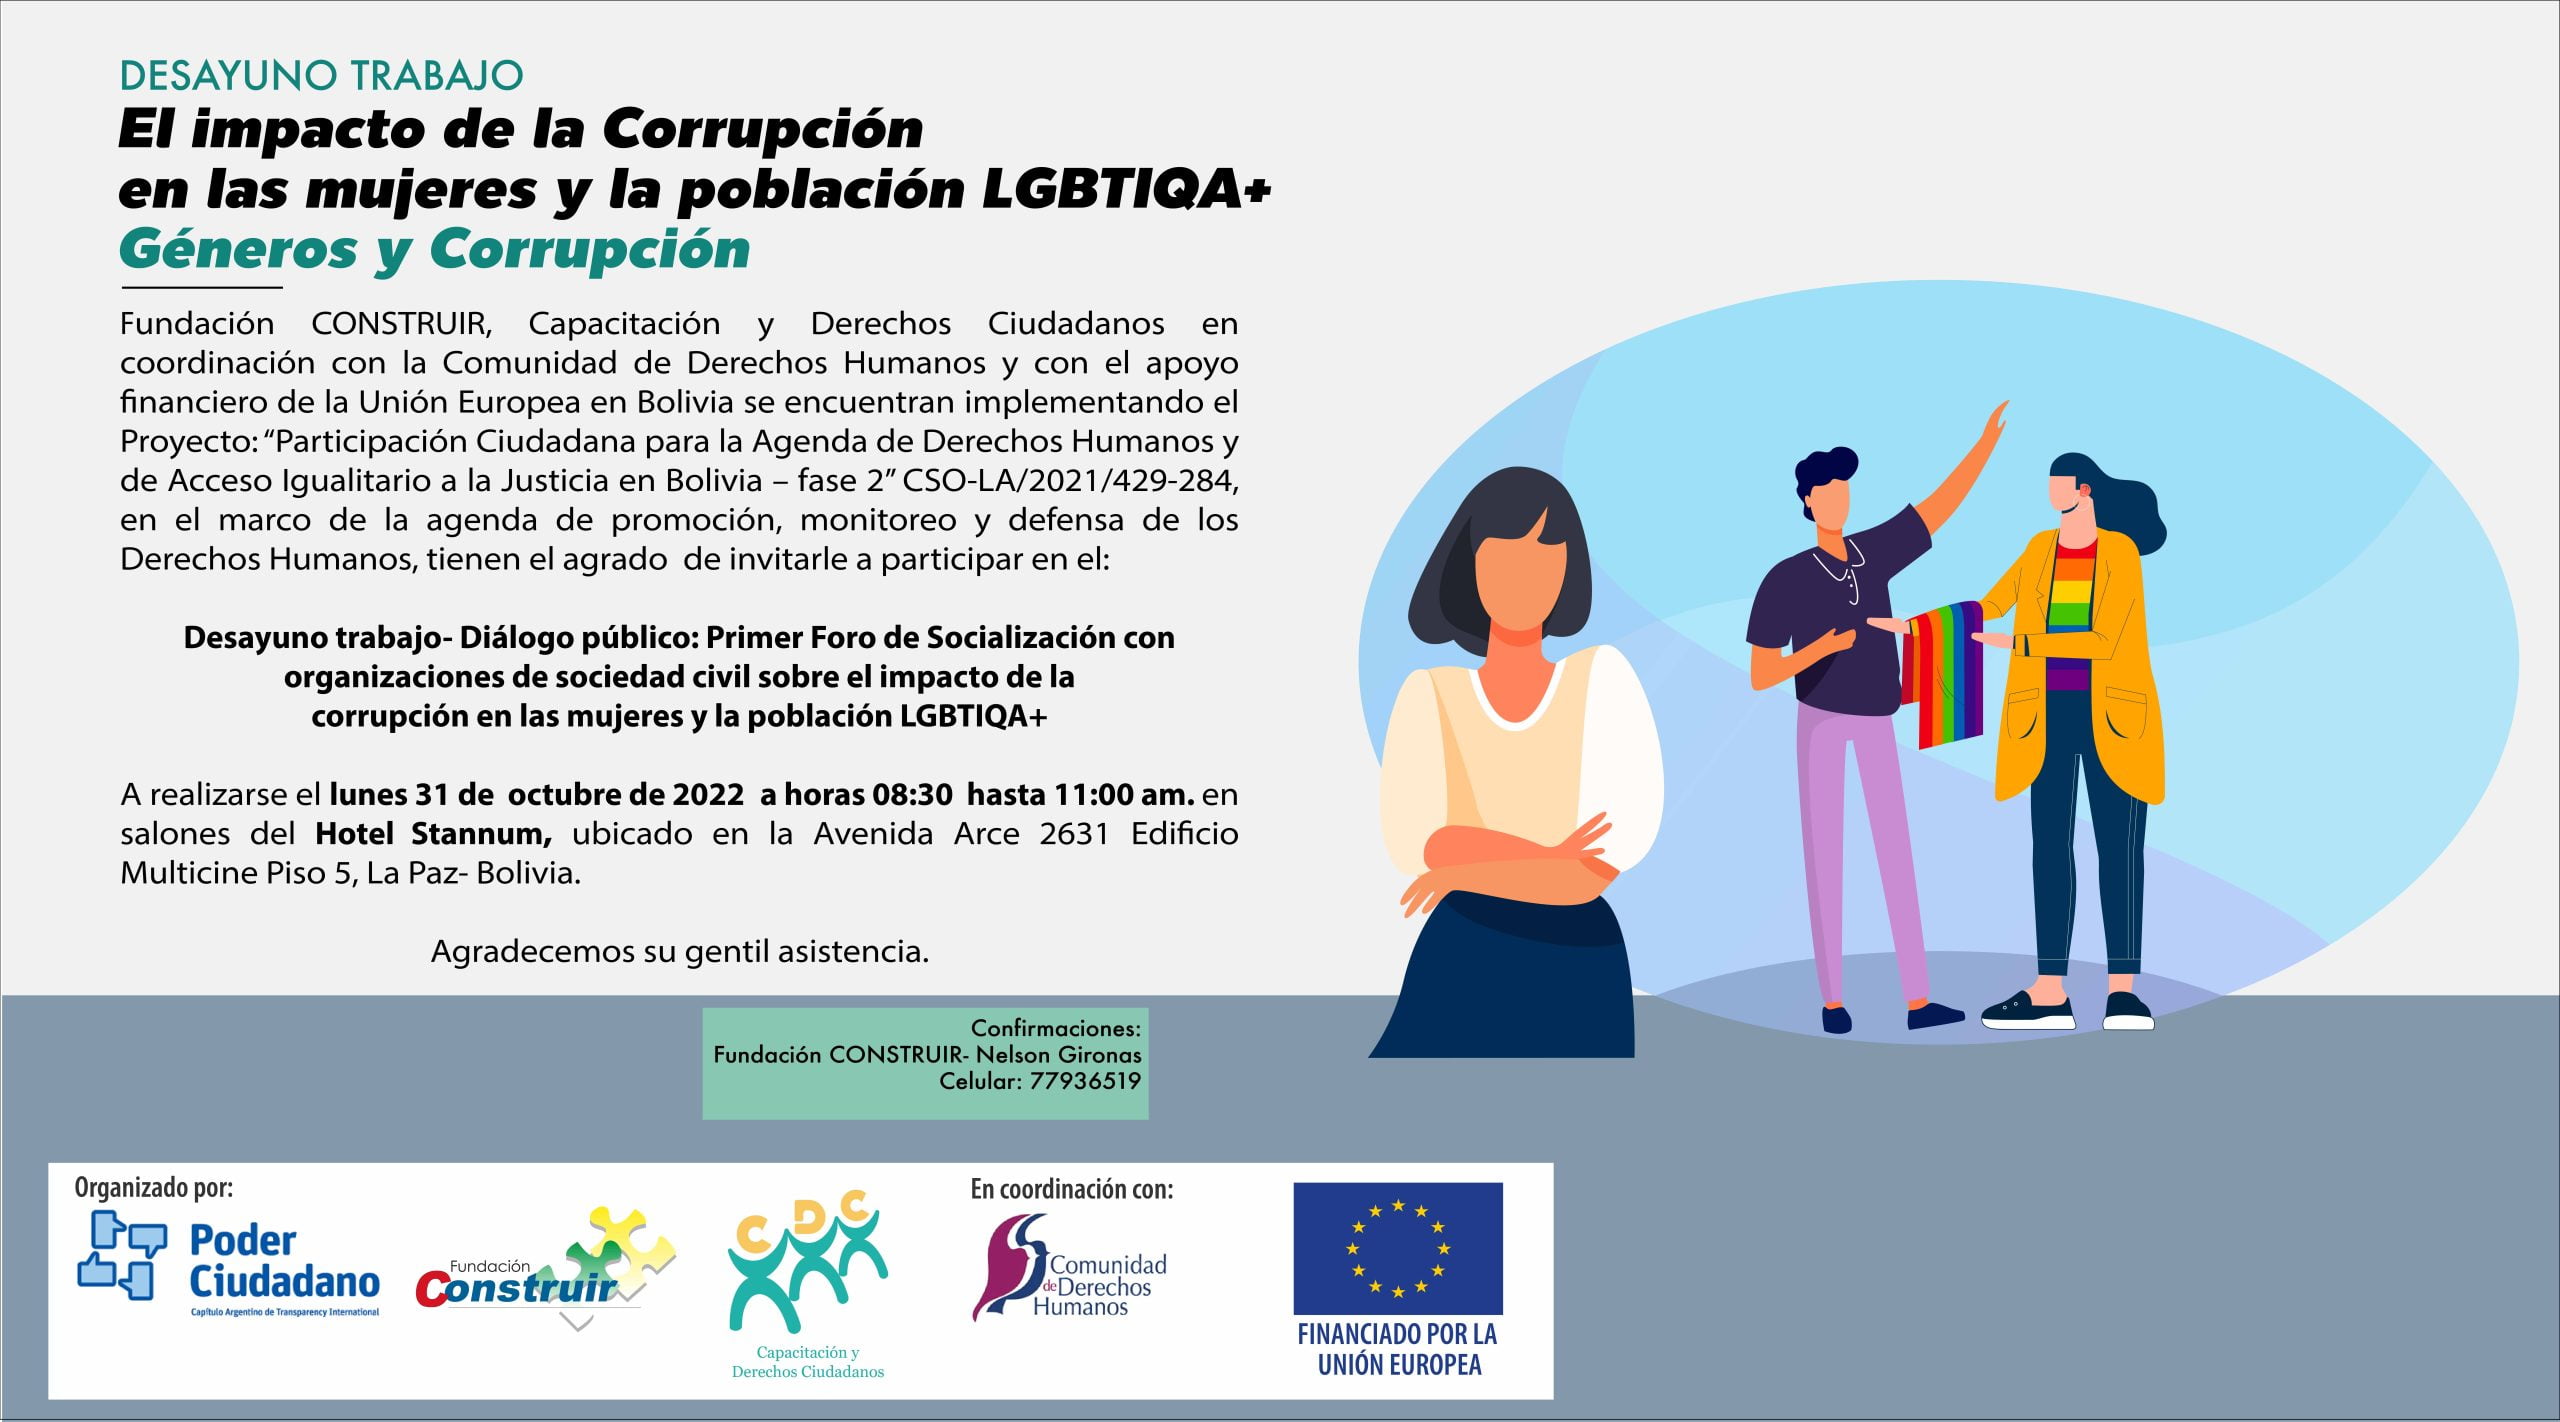 Desayuno Trabajo- Diálogo público: Primer Foro de Socialización con organizaciones de sociedad civil sobre el impacto de la corrupción en las mujeres y la población LGBTIQA+